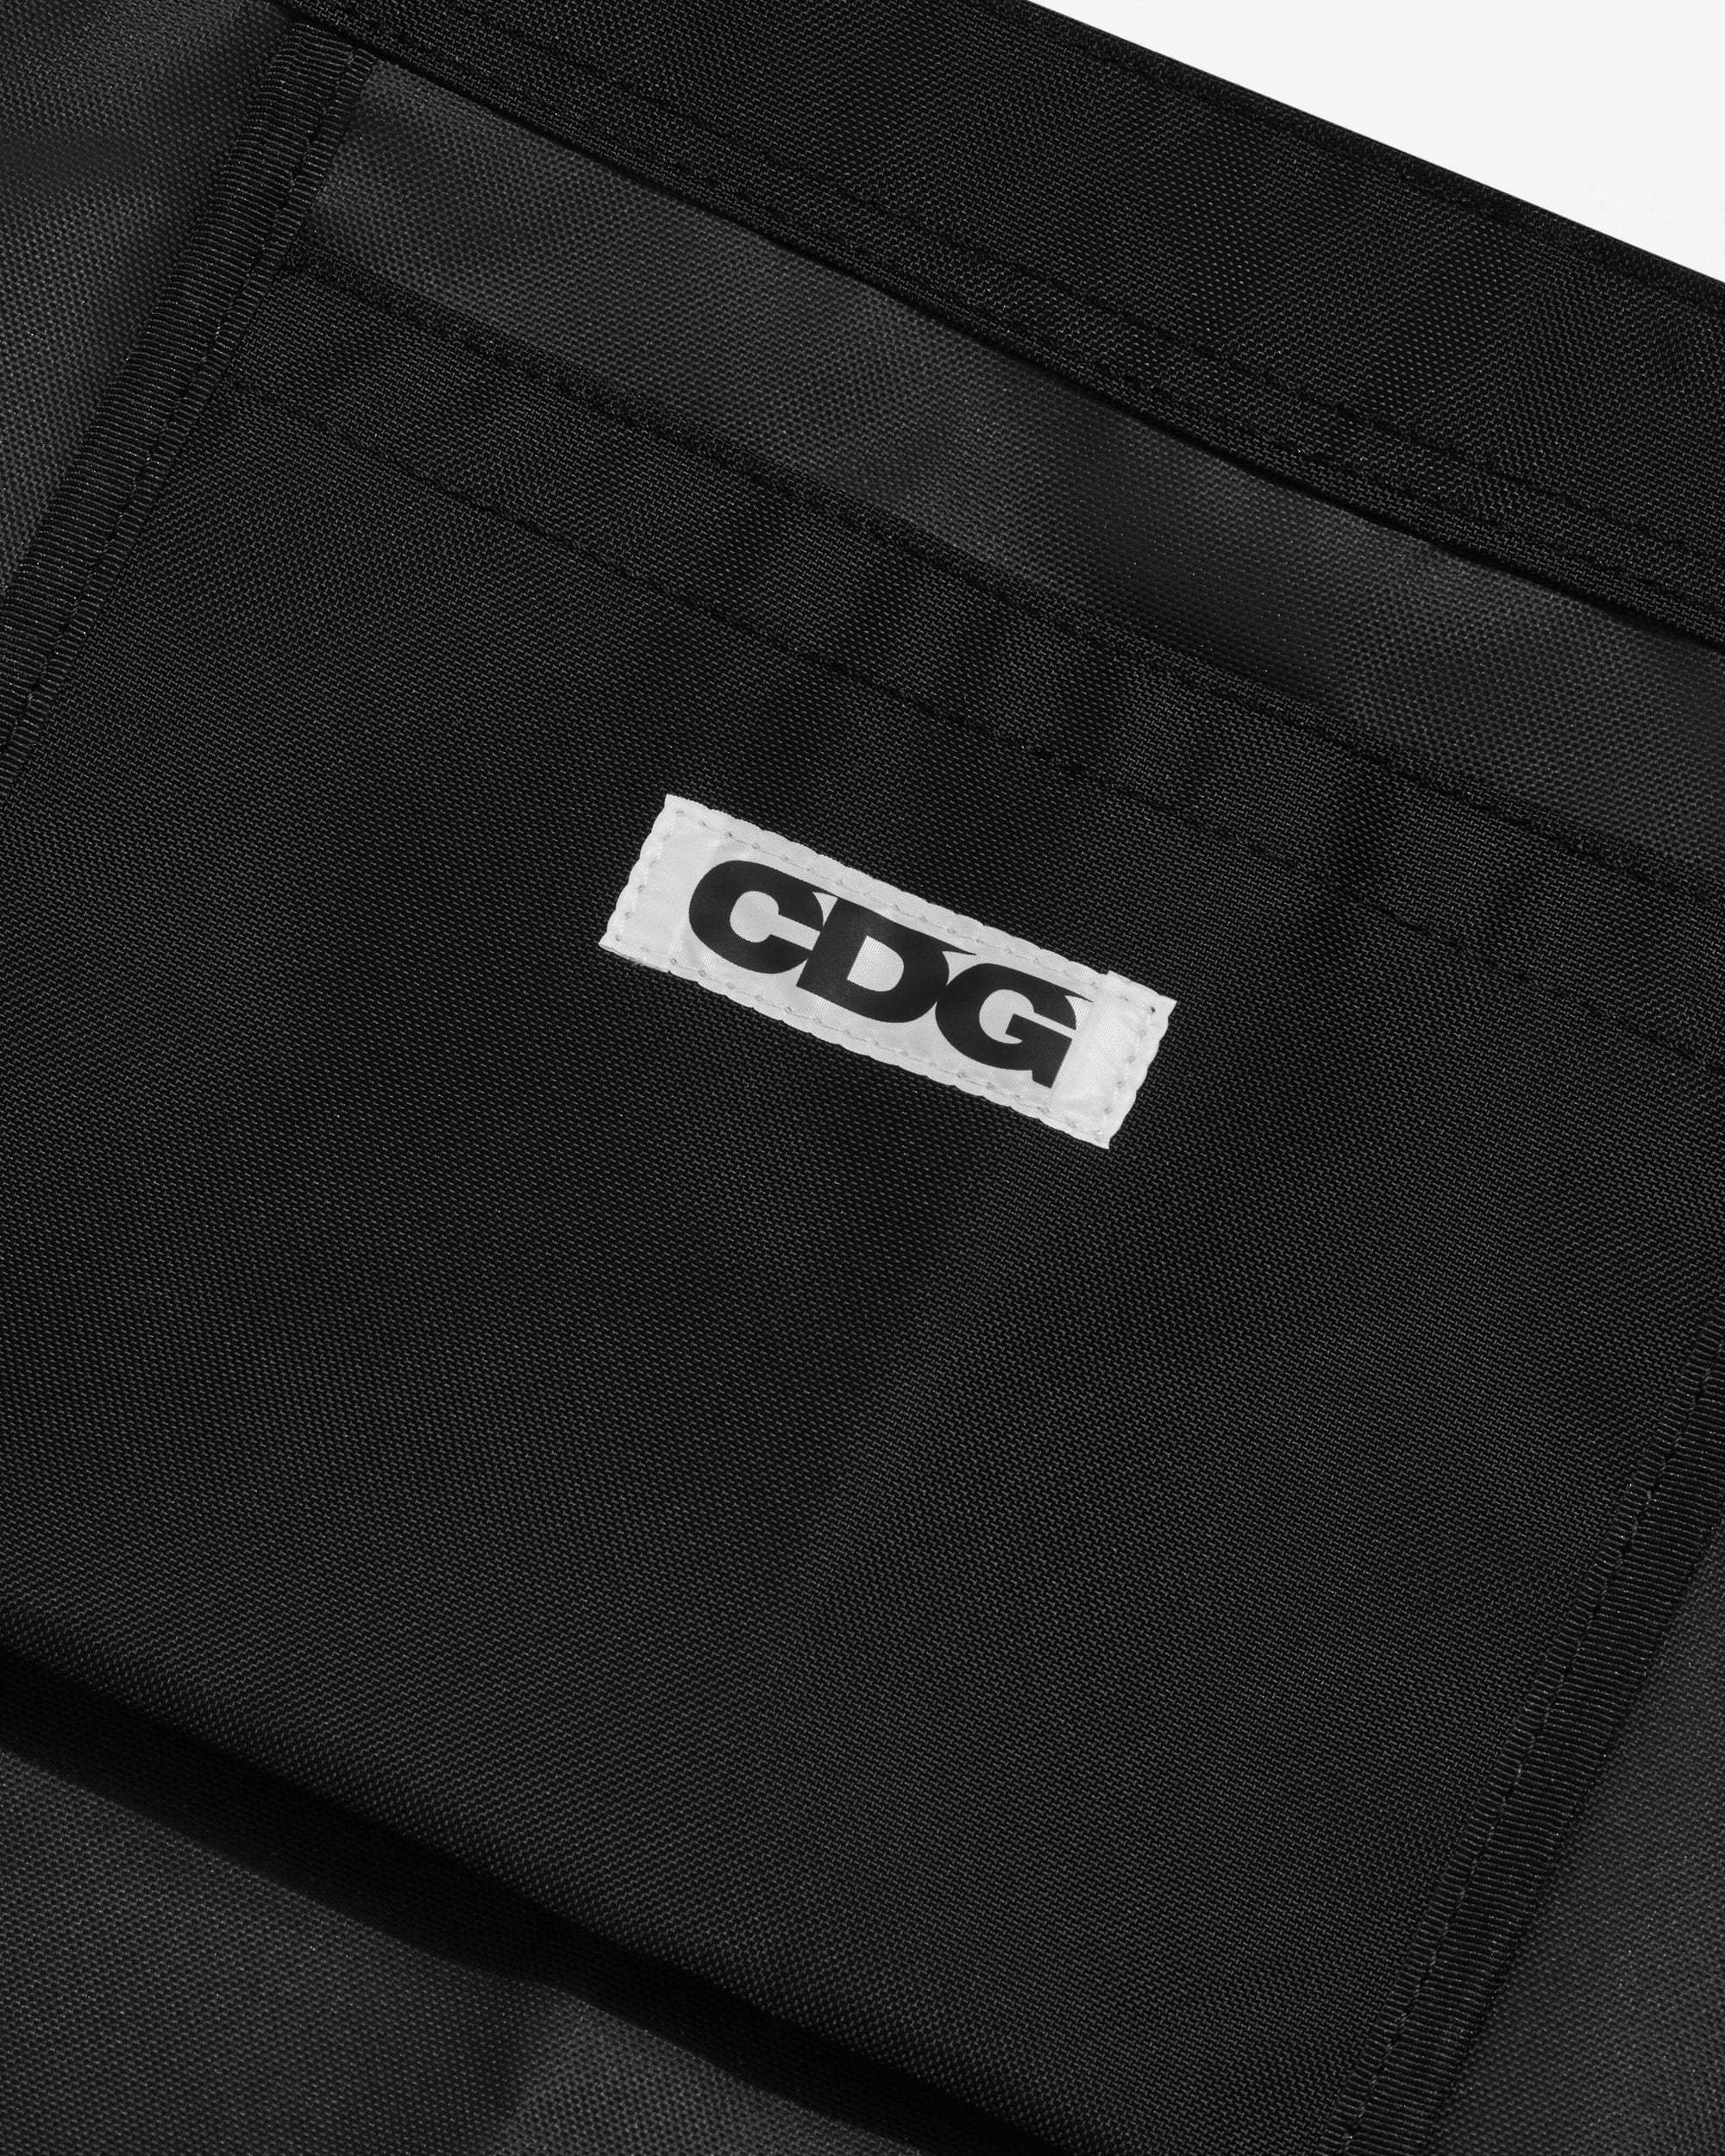 CDG - Shoulder Bag - (Black) view 3